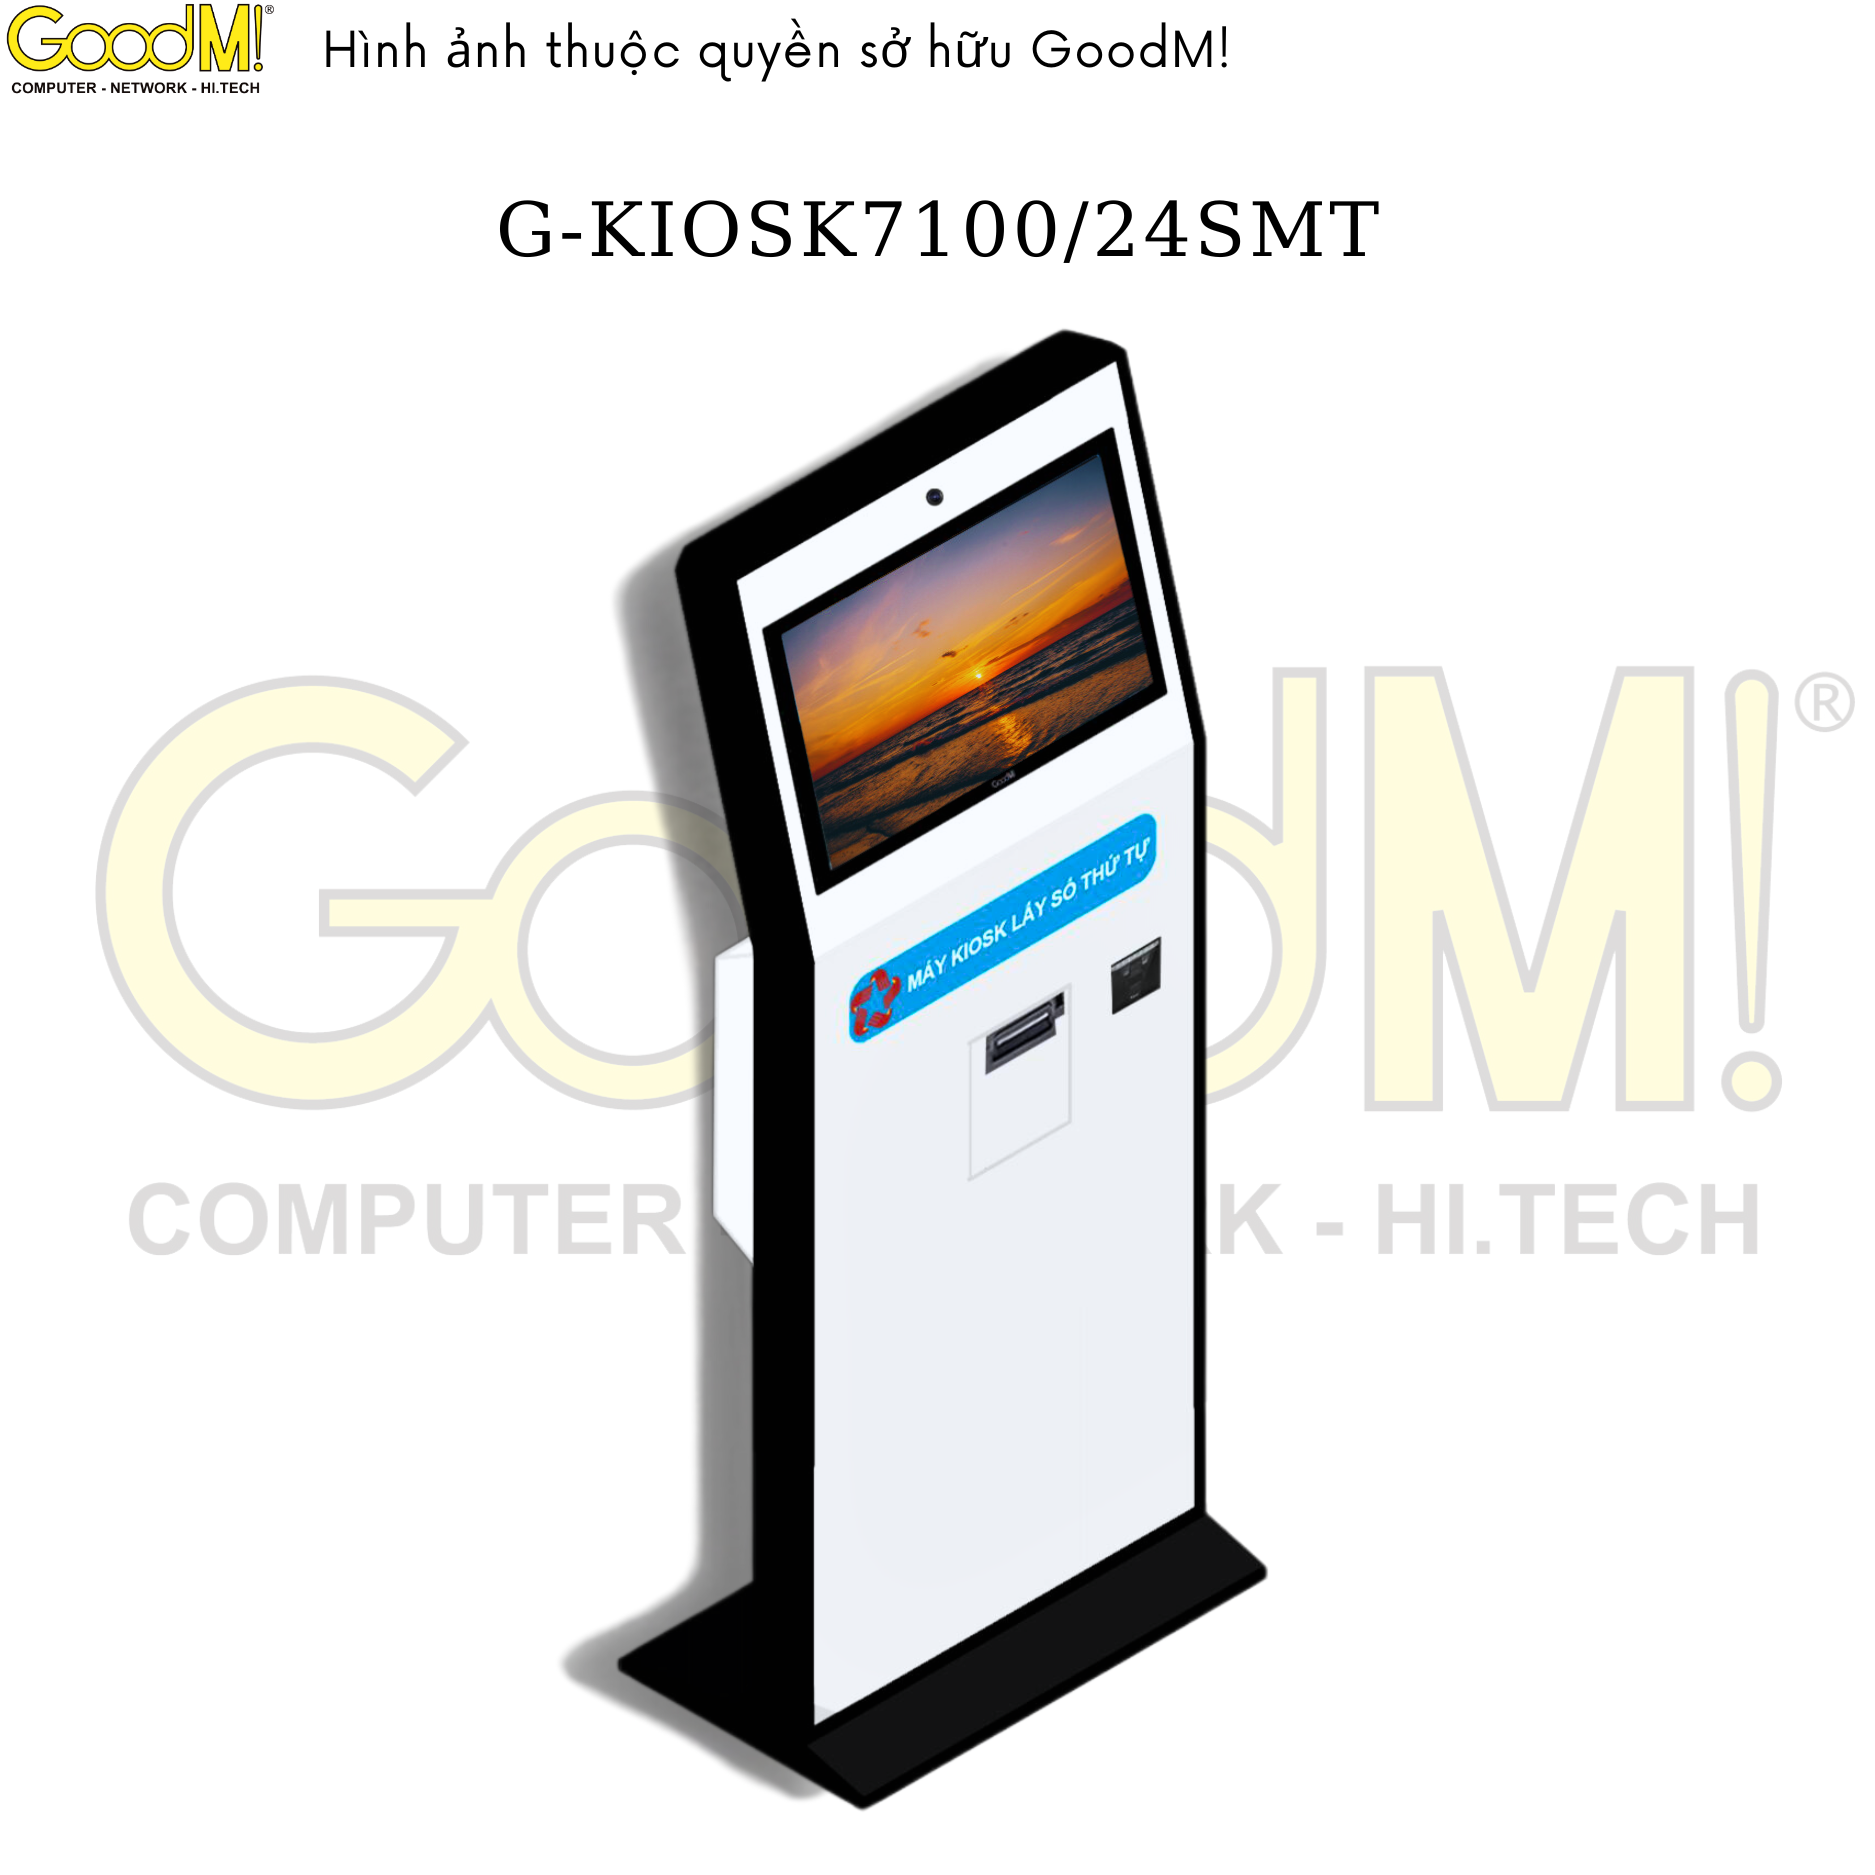  Kiosk Tra Cứu Thông Tin G-KIOSK7100/24SMT 